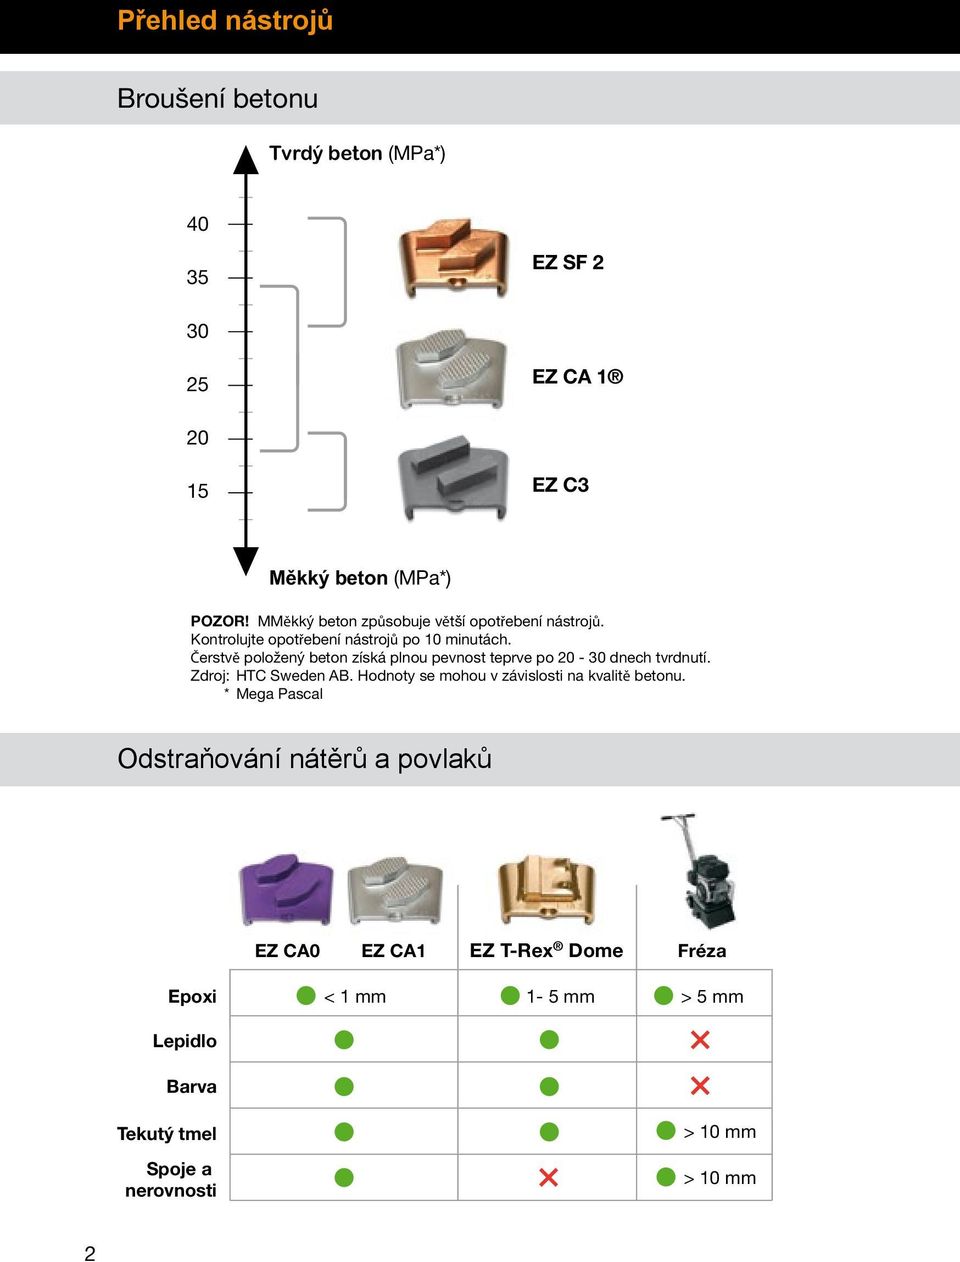 Čerstvě položený beton získá plnou pevnost teprve po 20-30 dnech tvrdnutí. Zdroj: HTC Sweden AB.